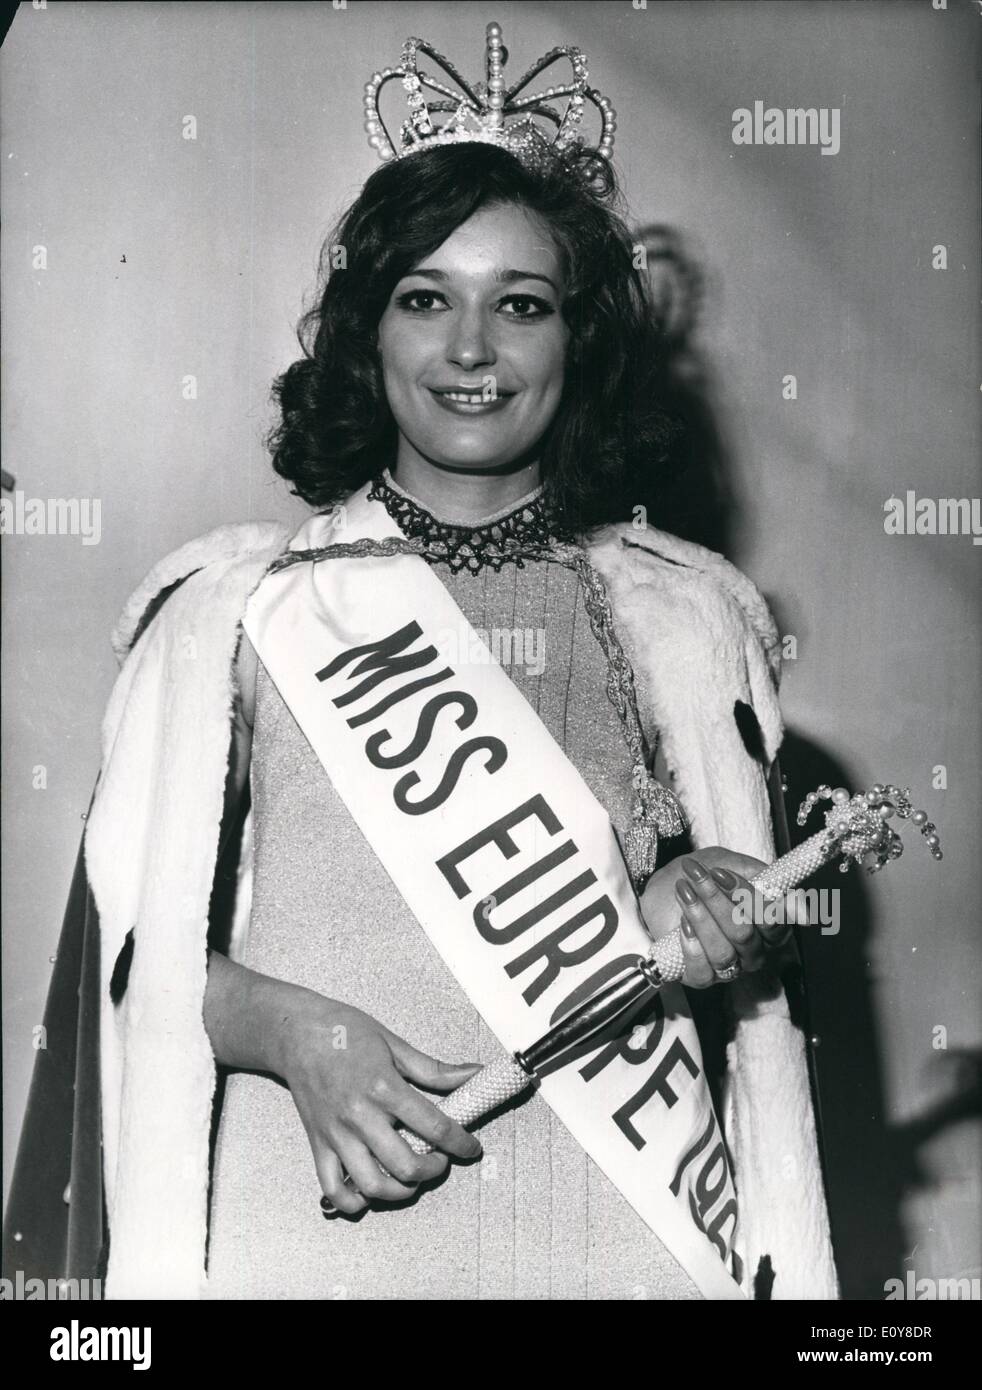 Mai 05, 1969 - L'élection Miss Europe a eu lieu à Rabat, au Maroc. Zajc, qui était autrefois ''Miss Yougoslavie,'' a gagné plus de 19 autres participants. Le runner-up ont été Jeanne Perfeldt (Miss Danemark) & Elke Hein (Miss Germany). Pele reçoit ''Champion du siècle'' Trophy Banque D'Images